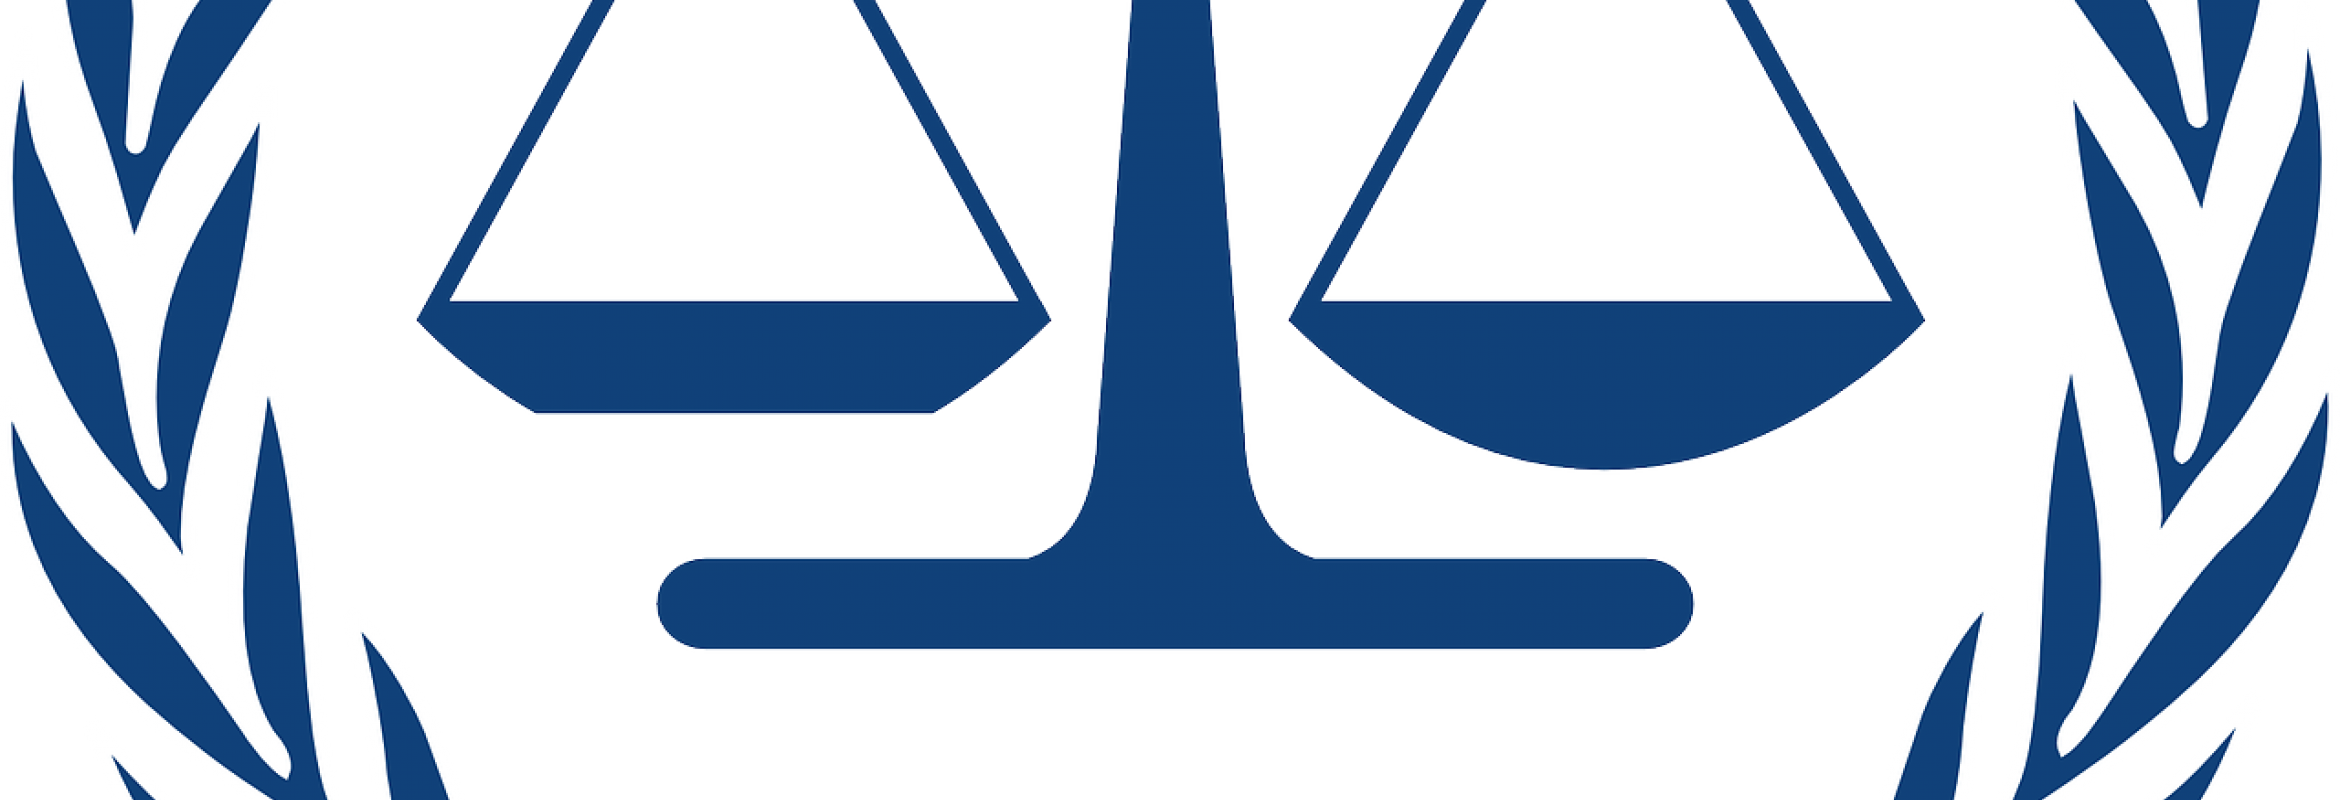 Международный Уголовный трибунал. Международный Уголовный суд логотип. МУС Международный Уголовный суд. Римский статут международного уголовного суда.